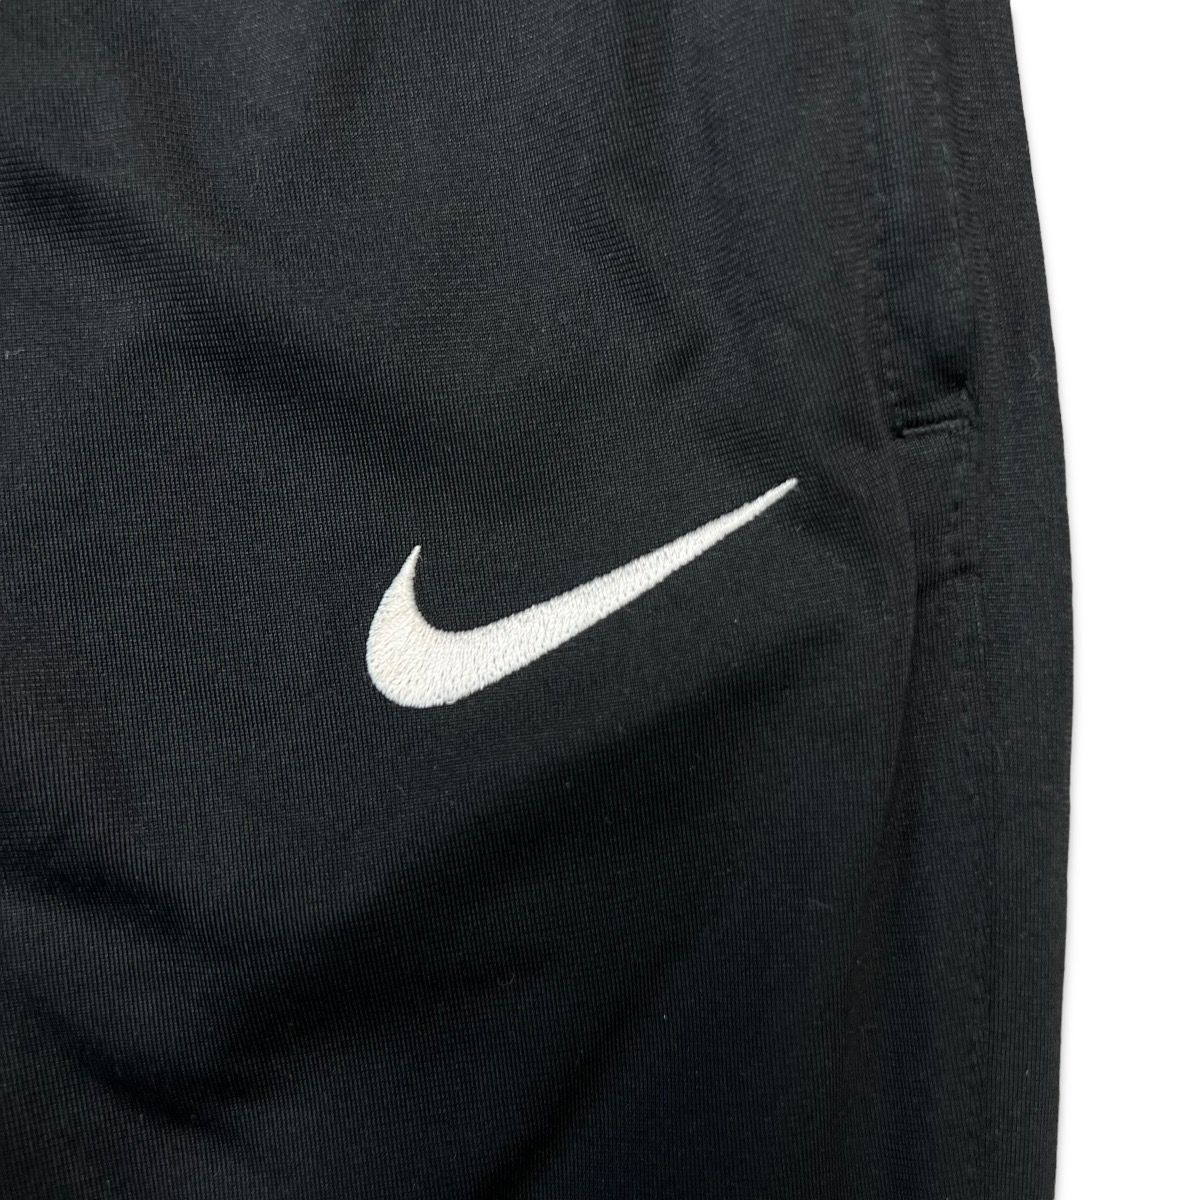 Nike Vintage Y2K Nike Pants 28x31 - Small Size US 28 / EU 44 - 2 Preview